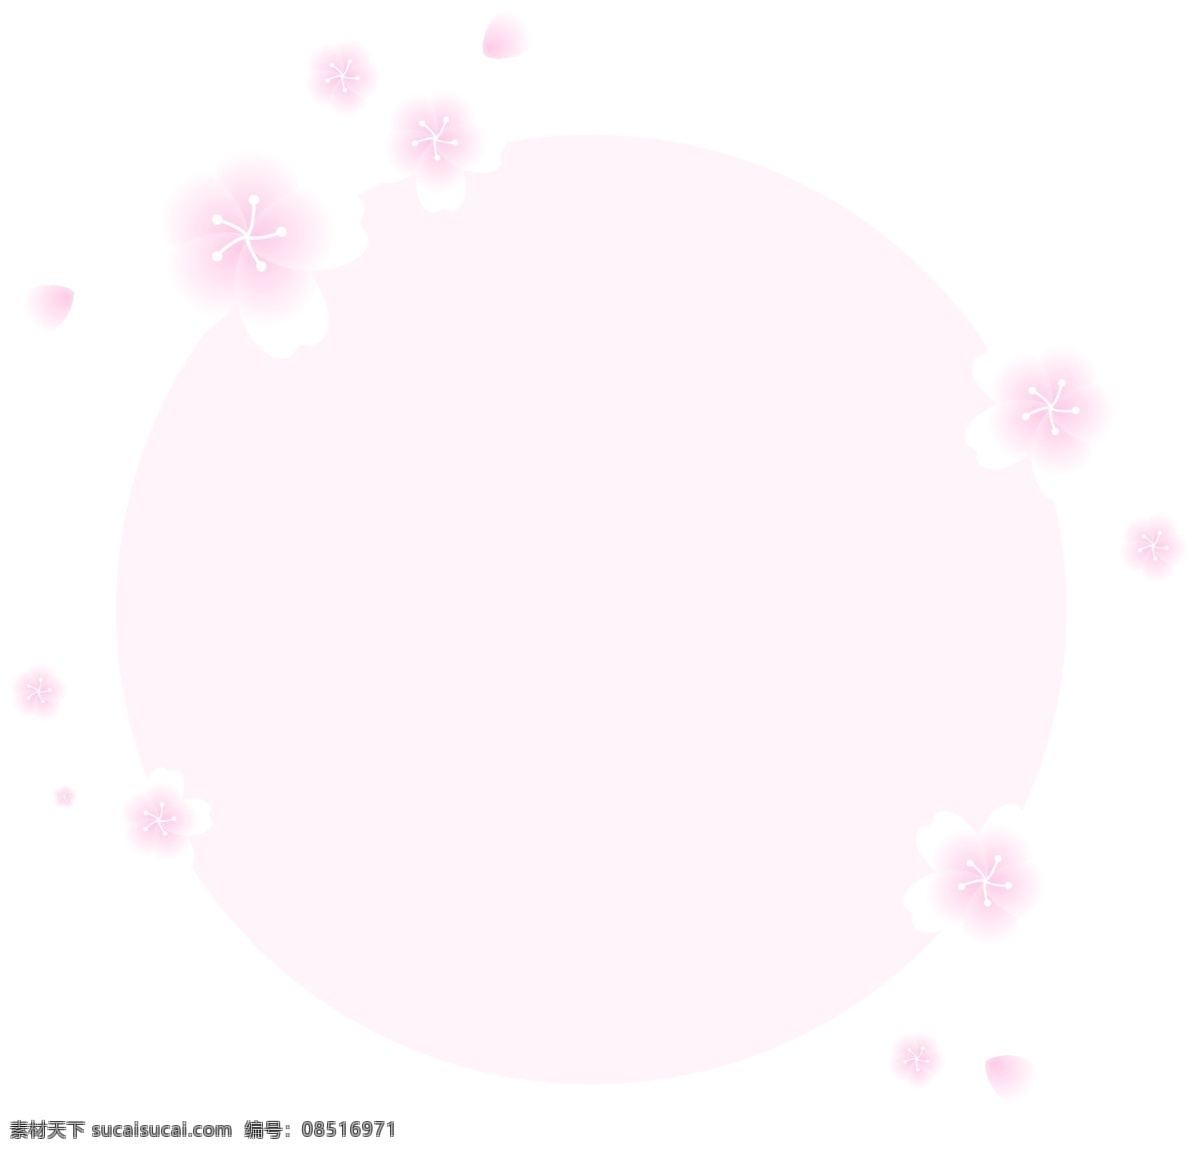 樱花 多多 粉色 圆形 边框 花 樱 花瓣 矢量 日本 花卉 矢量樱花 花朵 山 装饰 和风 浪漫 彩色 线条 圆形边框